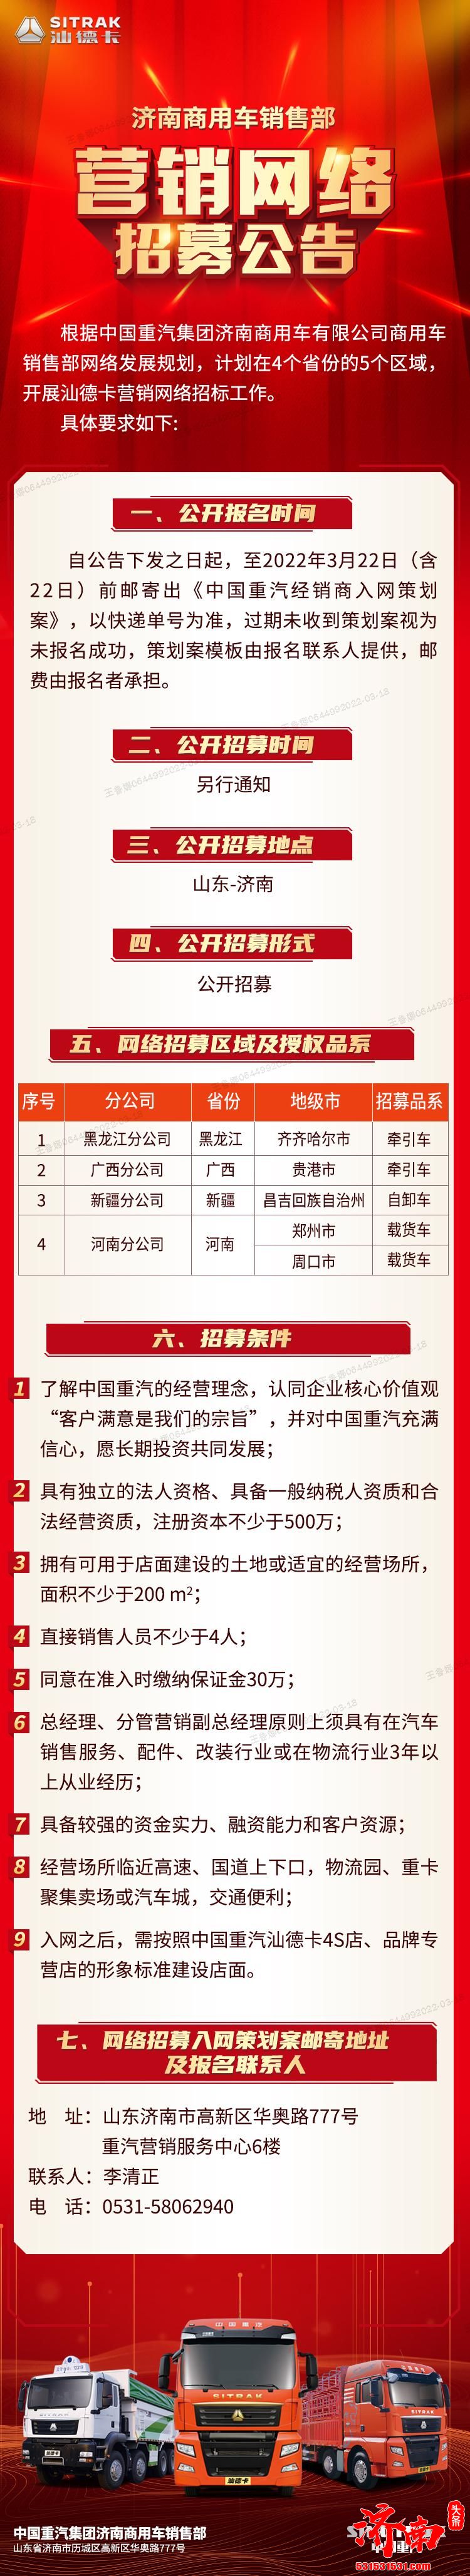 中国重汽济南商用车有限公司发布汕德卡营销网络招募公告